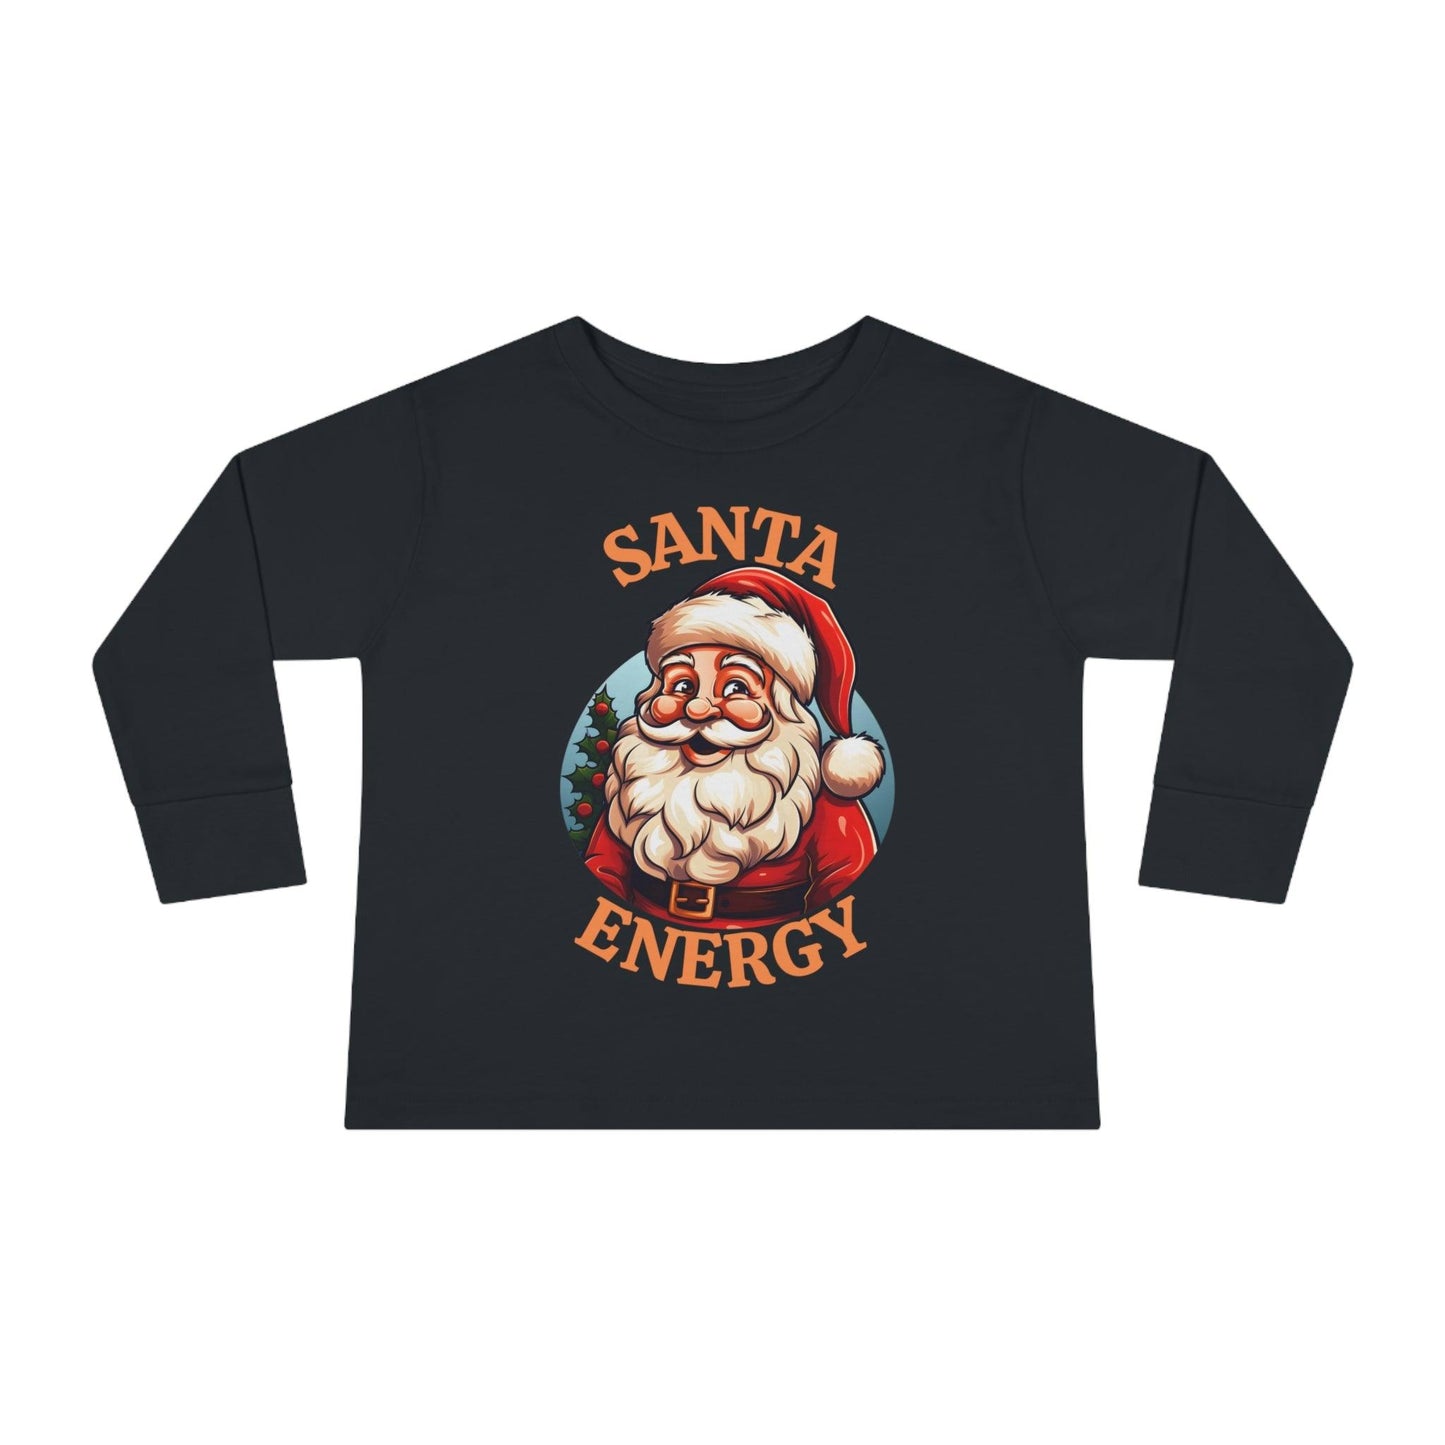 Kids Santa Energy Shirt For Christmas Shirt for Kids Christmas Outfit for Kids Santa Shirt - Giftsmojo